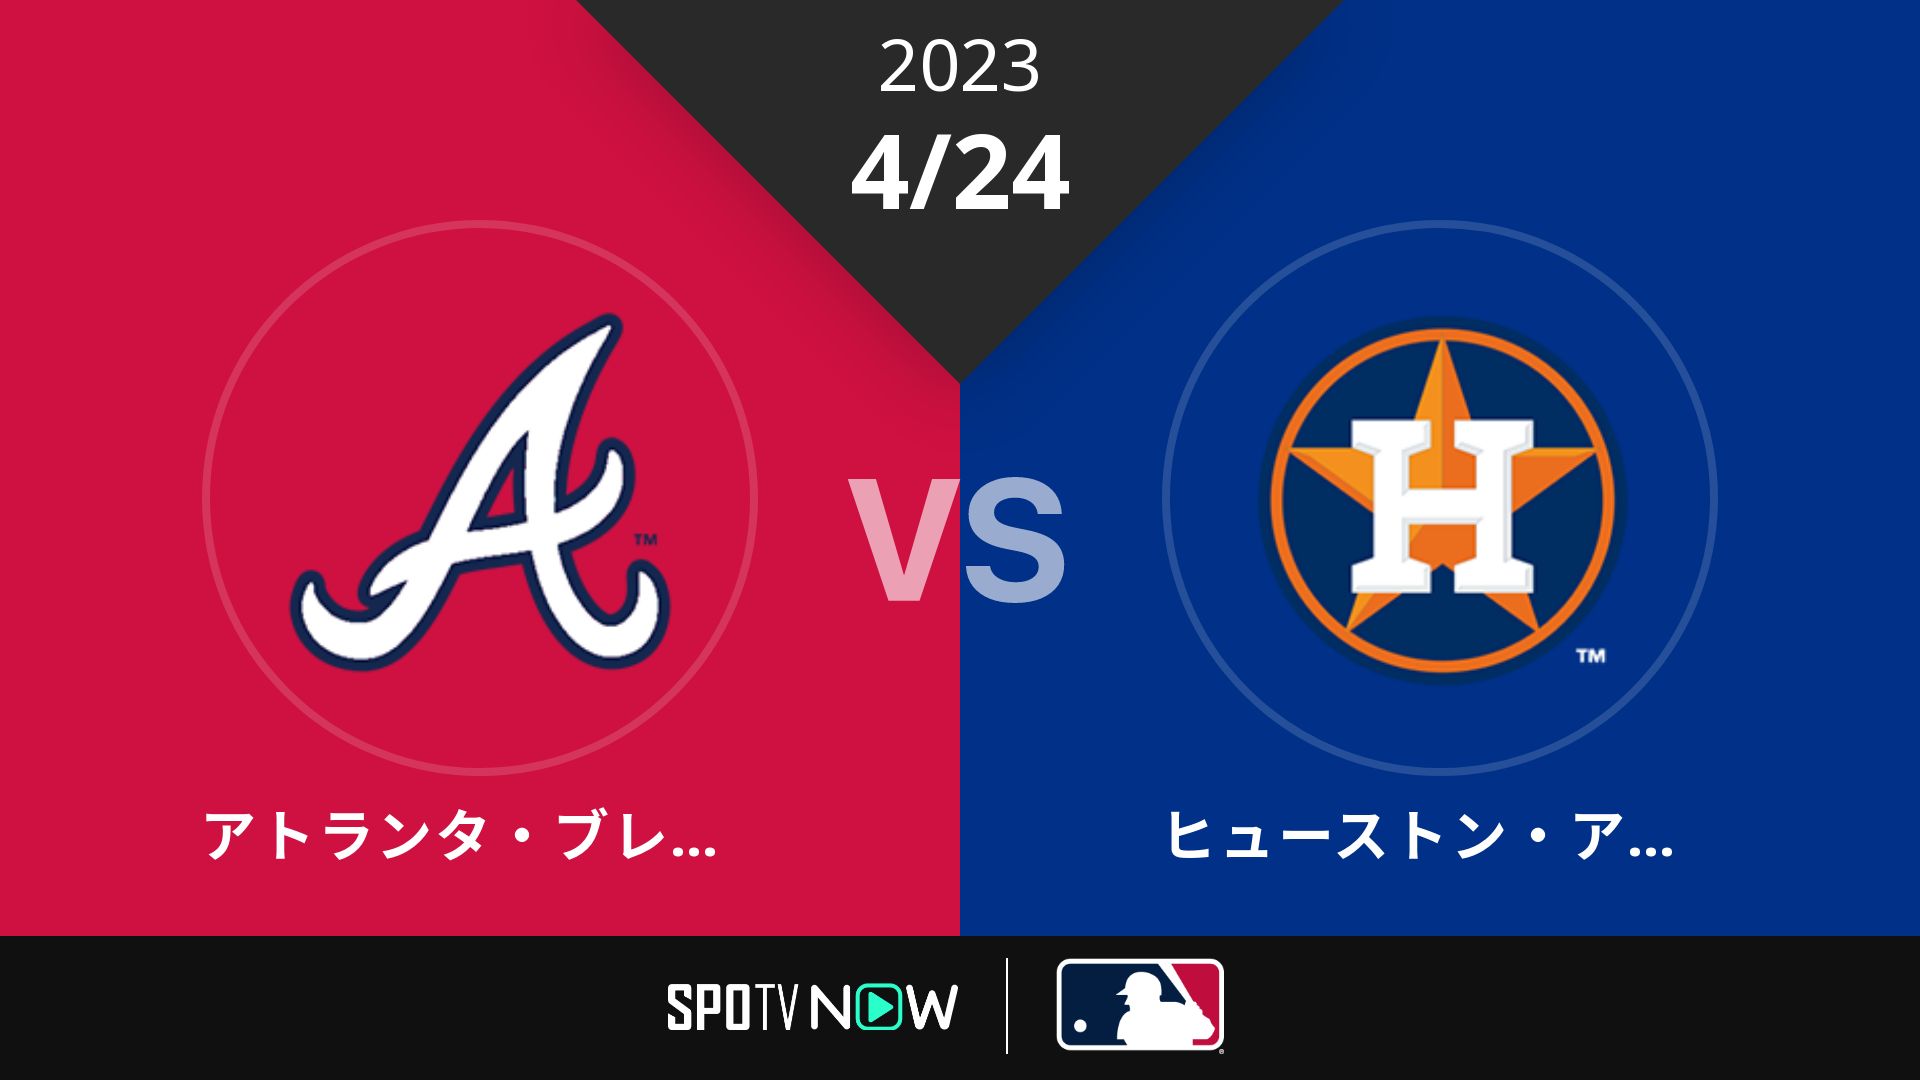 2023/4/24 ブレーブス vs アストロズ [MLB]